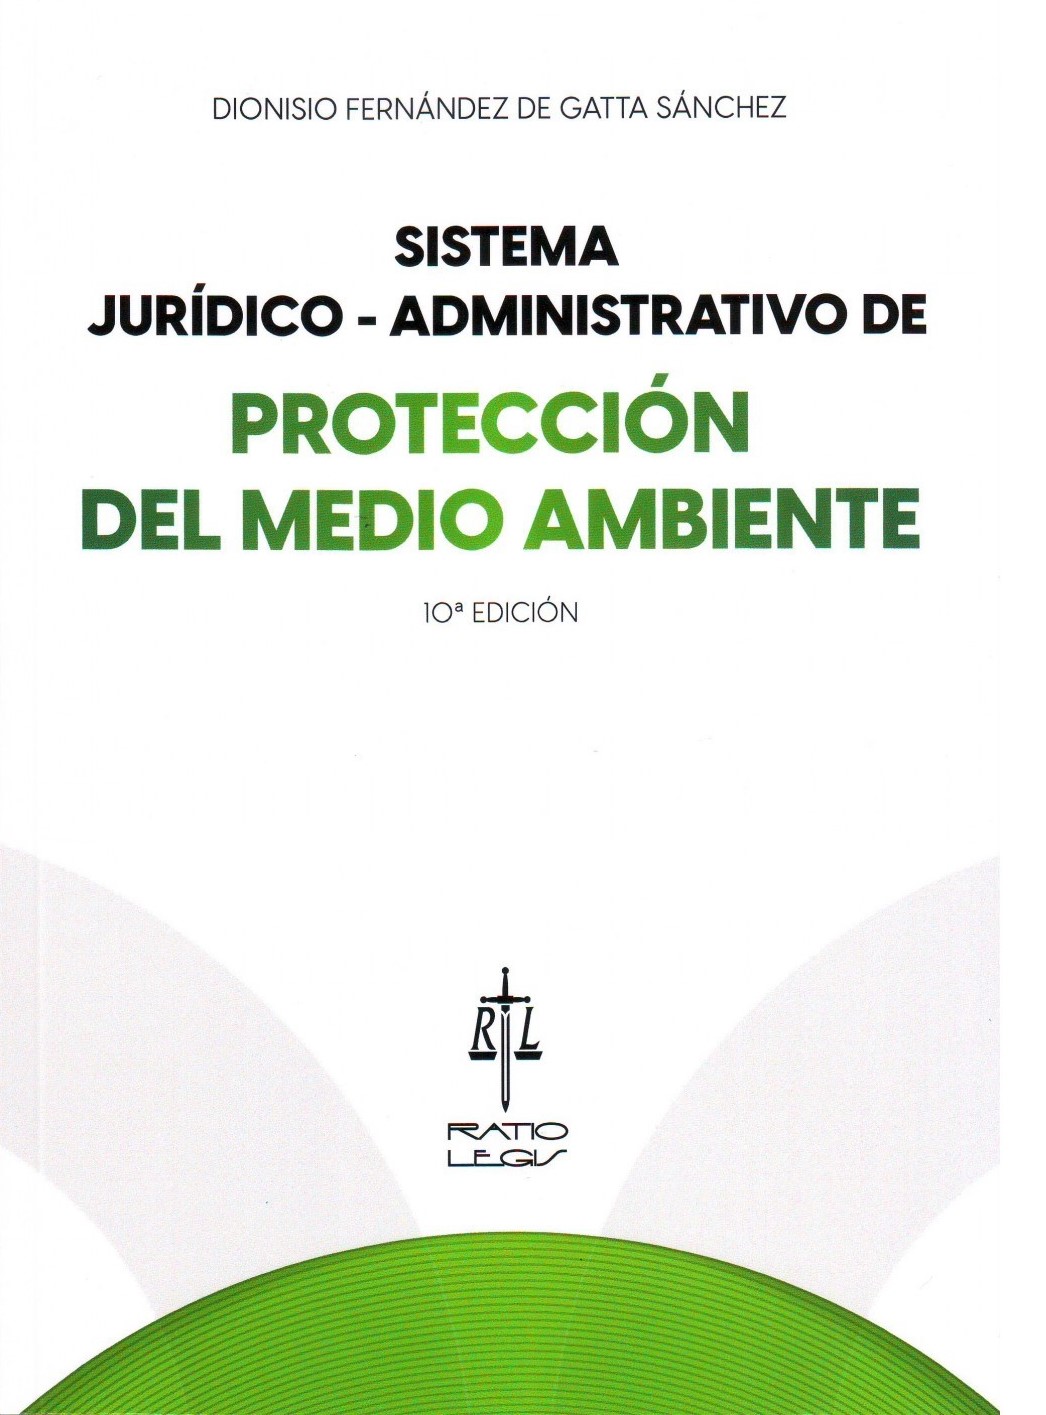 Sistema jurídico-administrativo de protección del Medio Ambiente